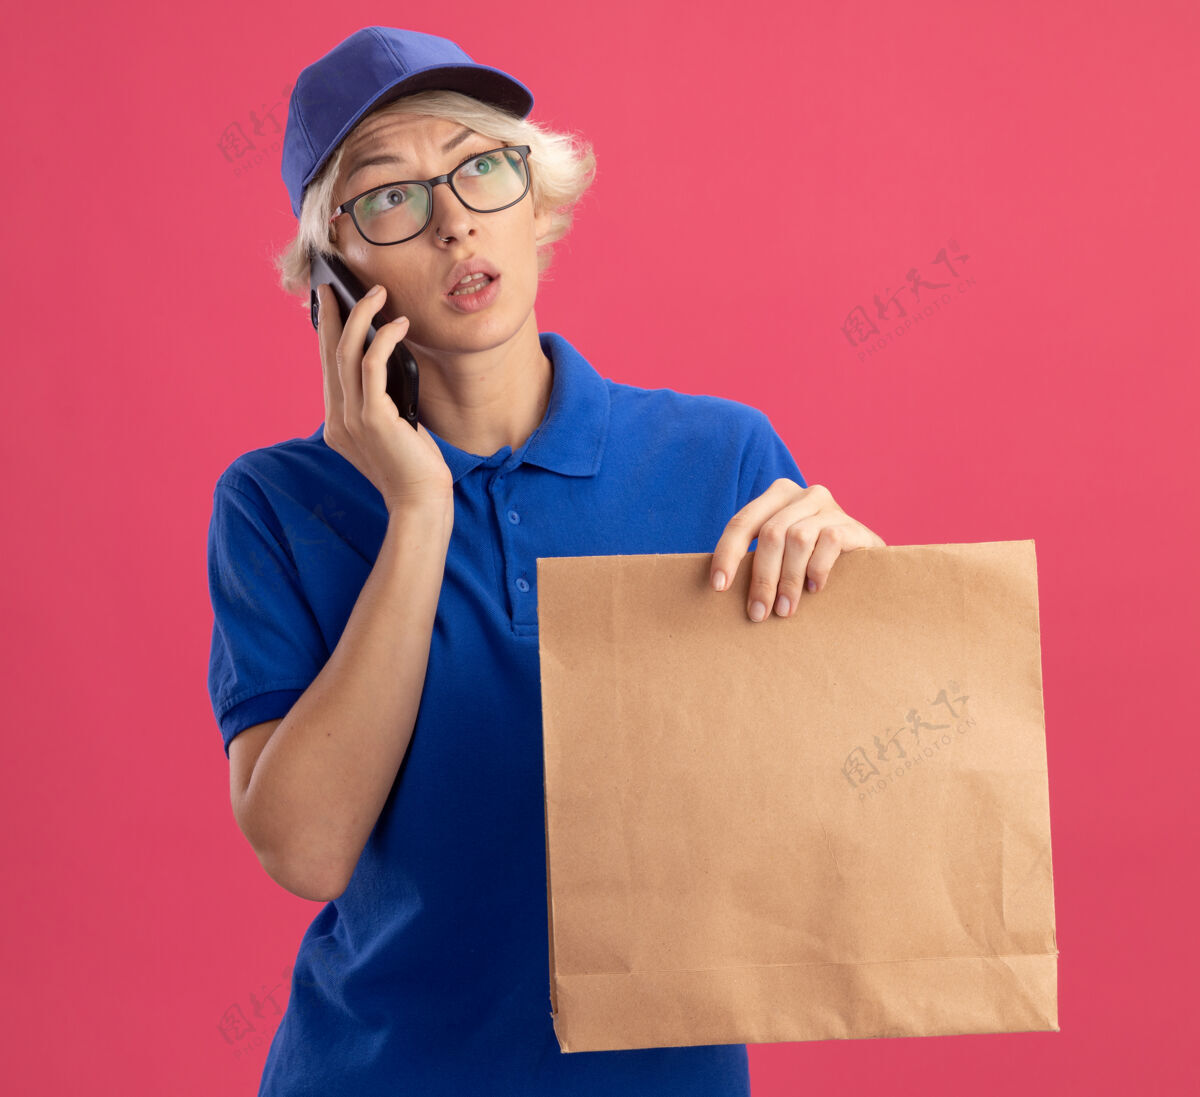 包装穿着蓝色制服 戴着帽子的年轻送货员拿着纸包在手机上聊天 隔着粉色的墙 一边困惑地看着一边女人年轻人帽子